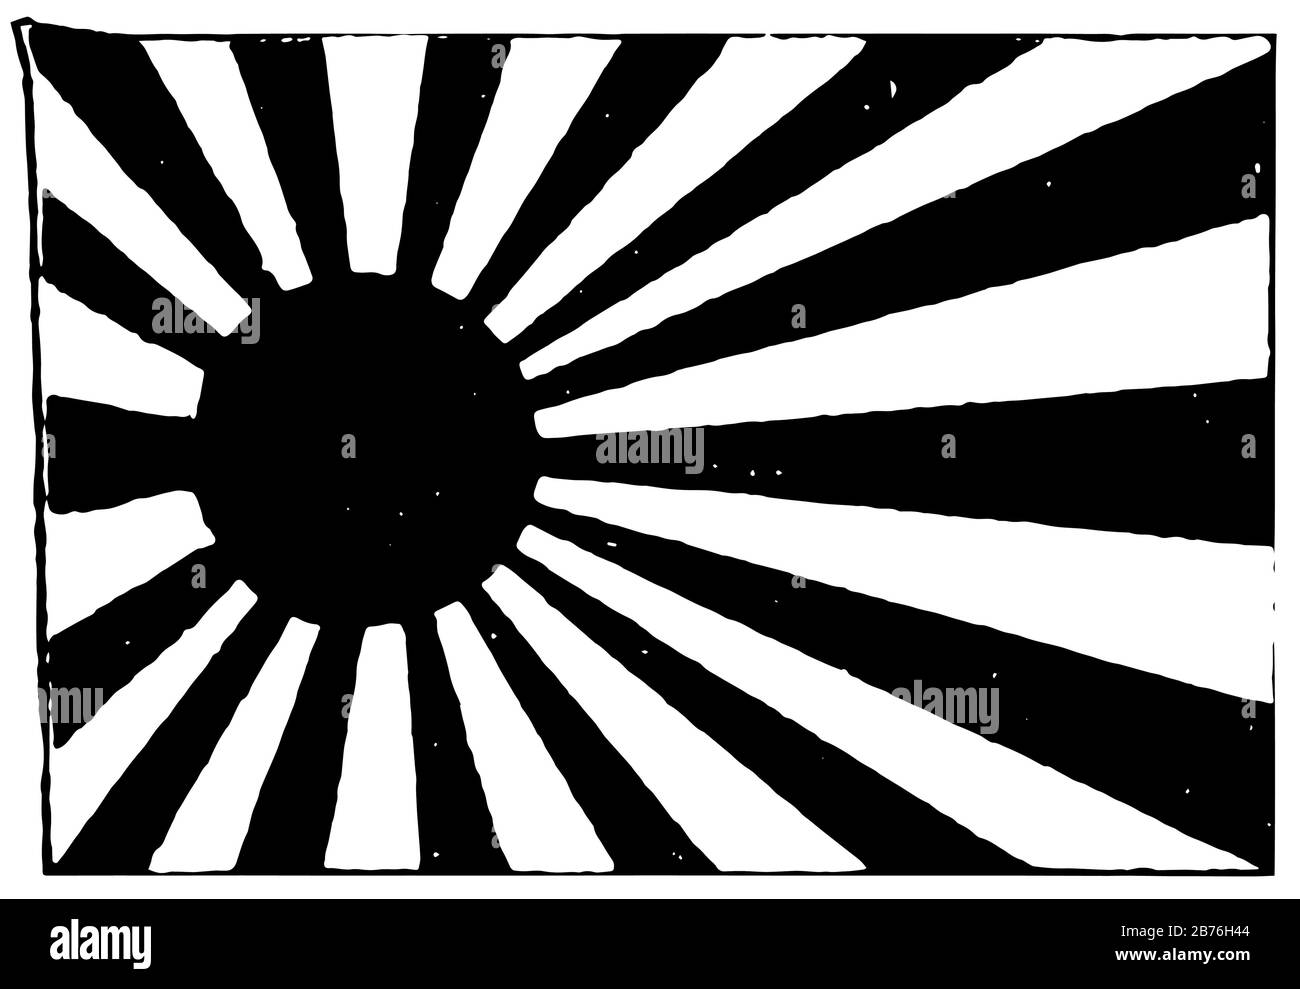 Japan, Flagge der kaiserlichen Marine, 1910, diese Flagge hat eine rote Sonnenscheibe mit 16 Strahlen auf einem weißen Feld, und die Scheibe ist zum Hebezeug, zur Vintage-Zeichnung oder verzerrt Stock Vektor